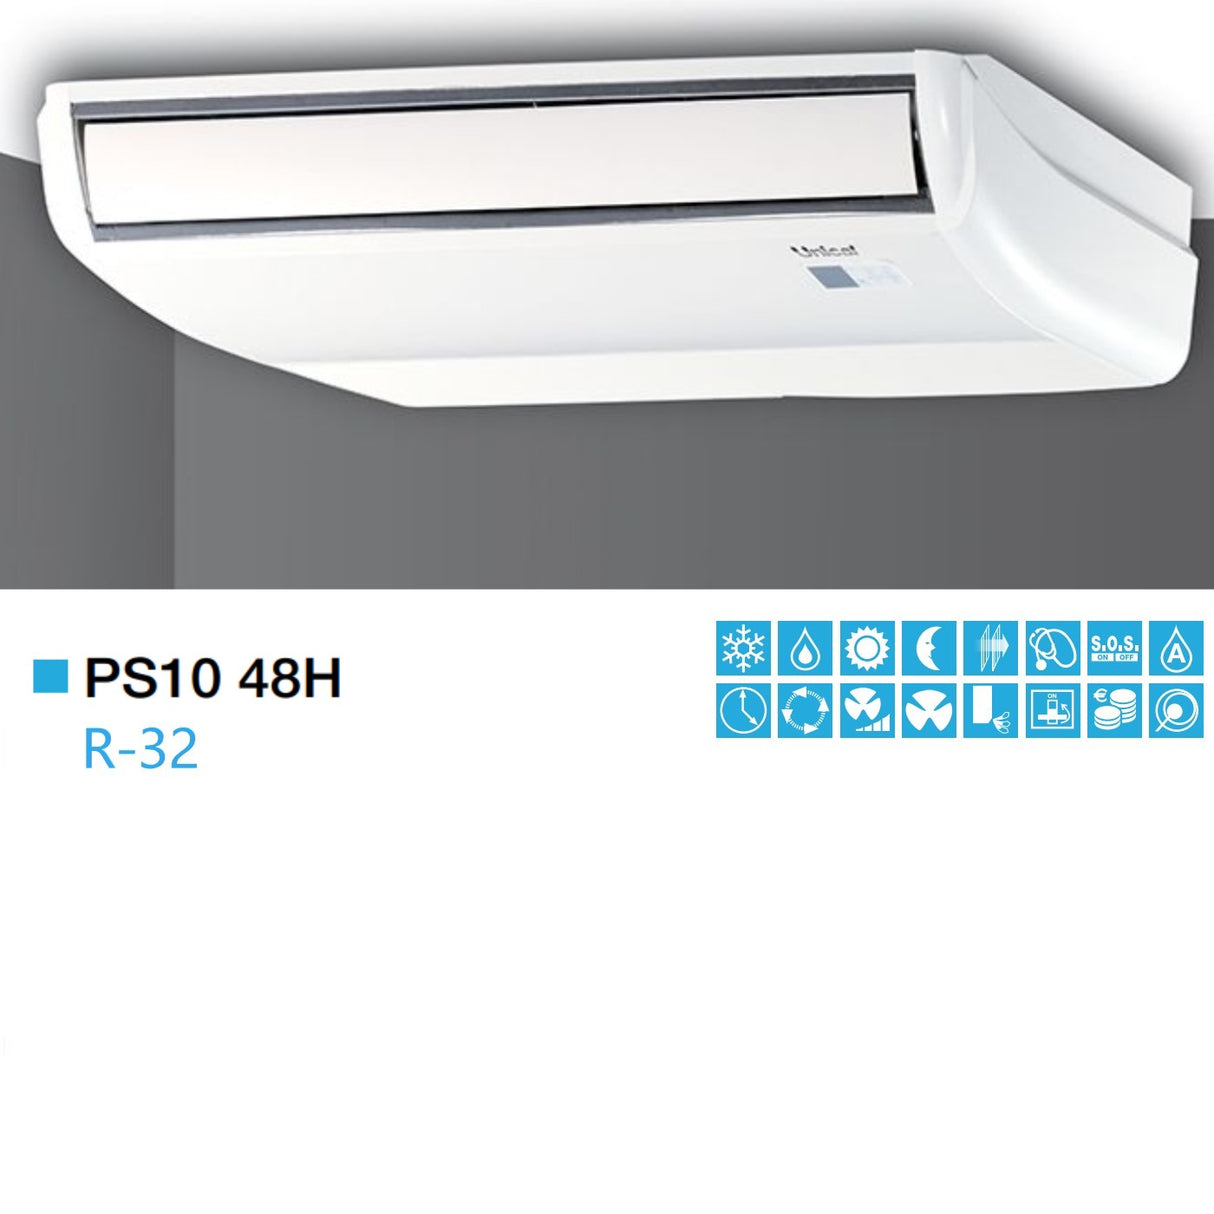 immagine-2-unical-condizionatore-climatizzatore-unical-soffittopavimento-48000-btu-ps10-48h-classe-aa-gas-r-32-novita